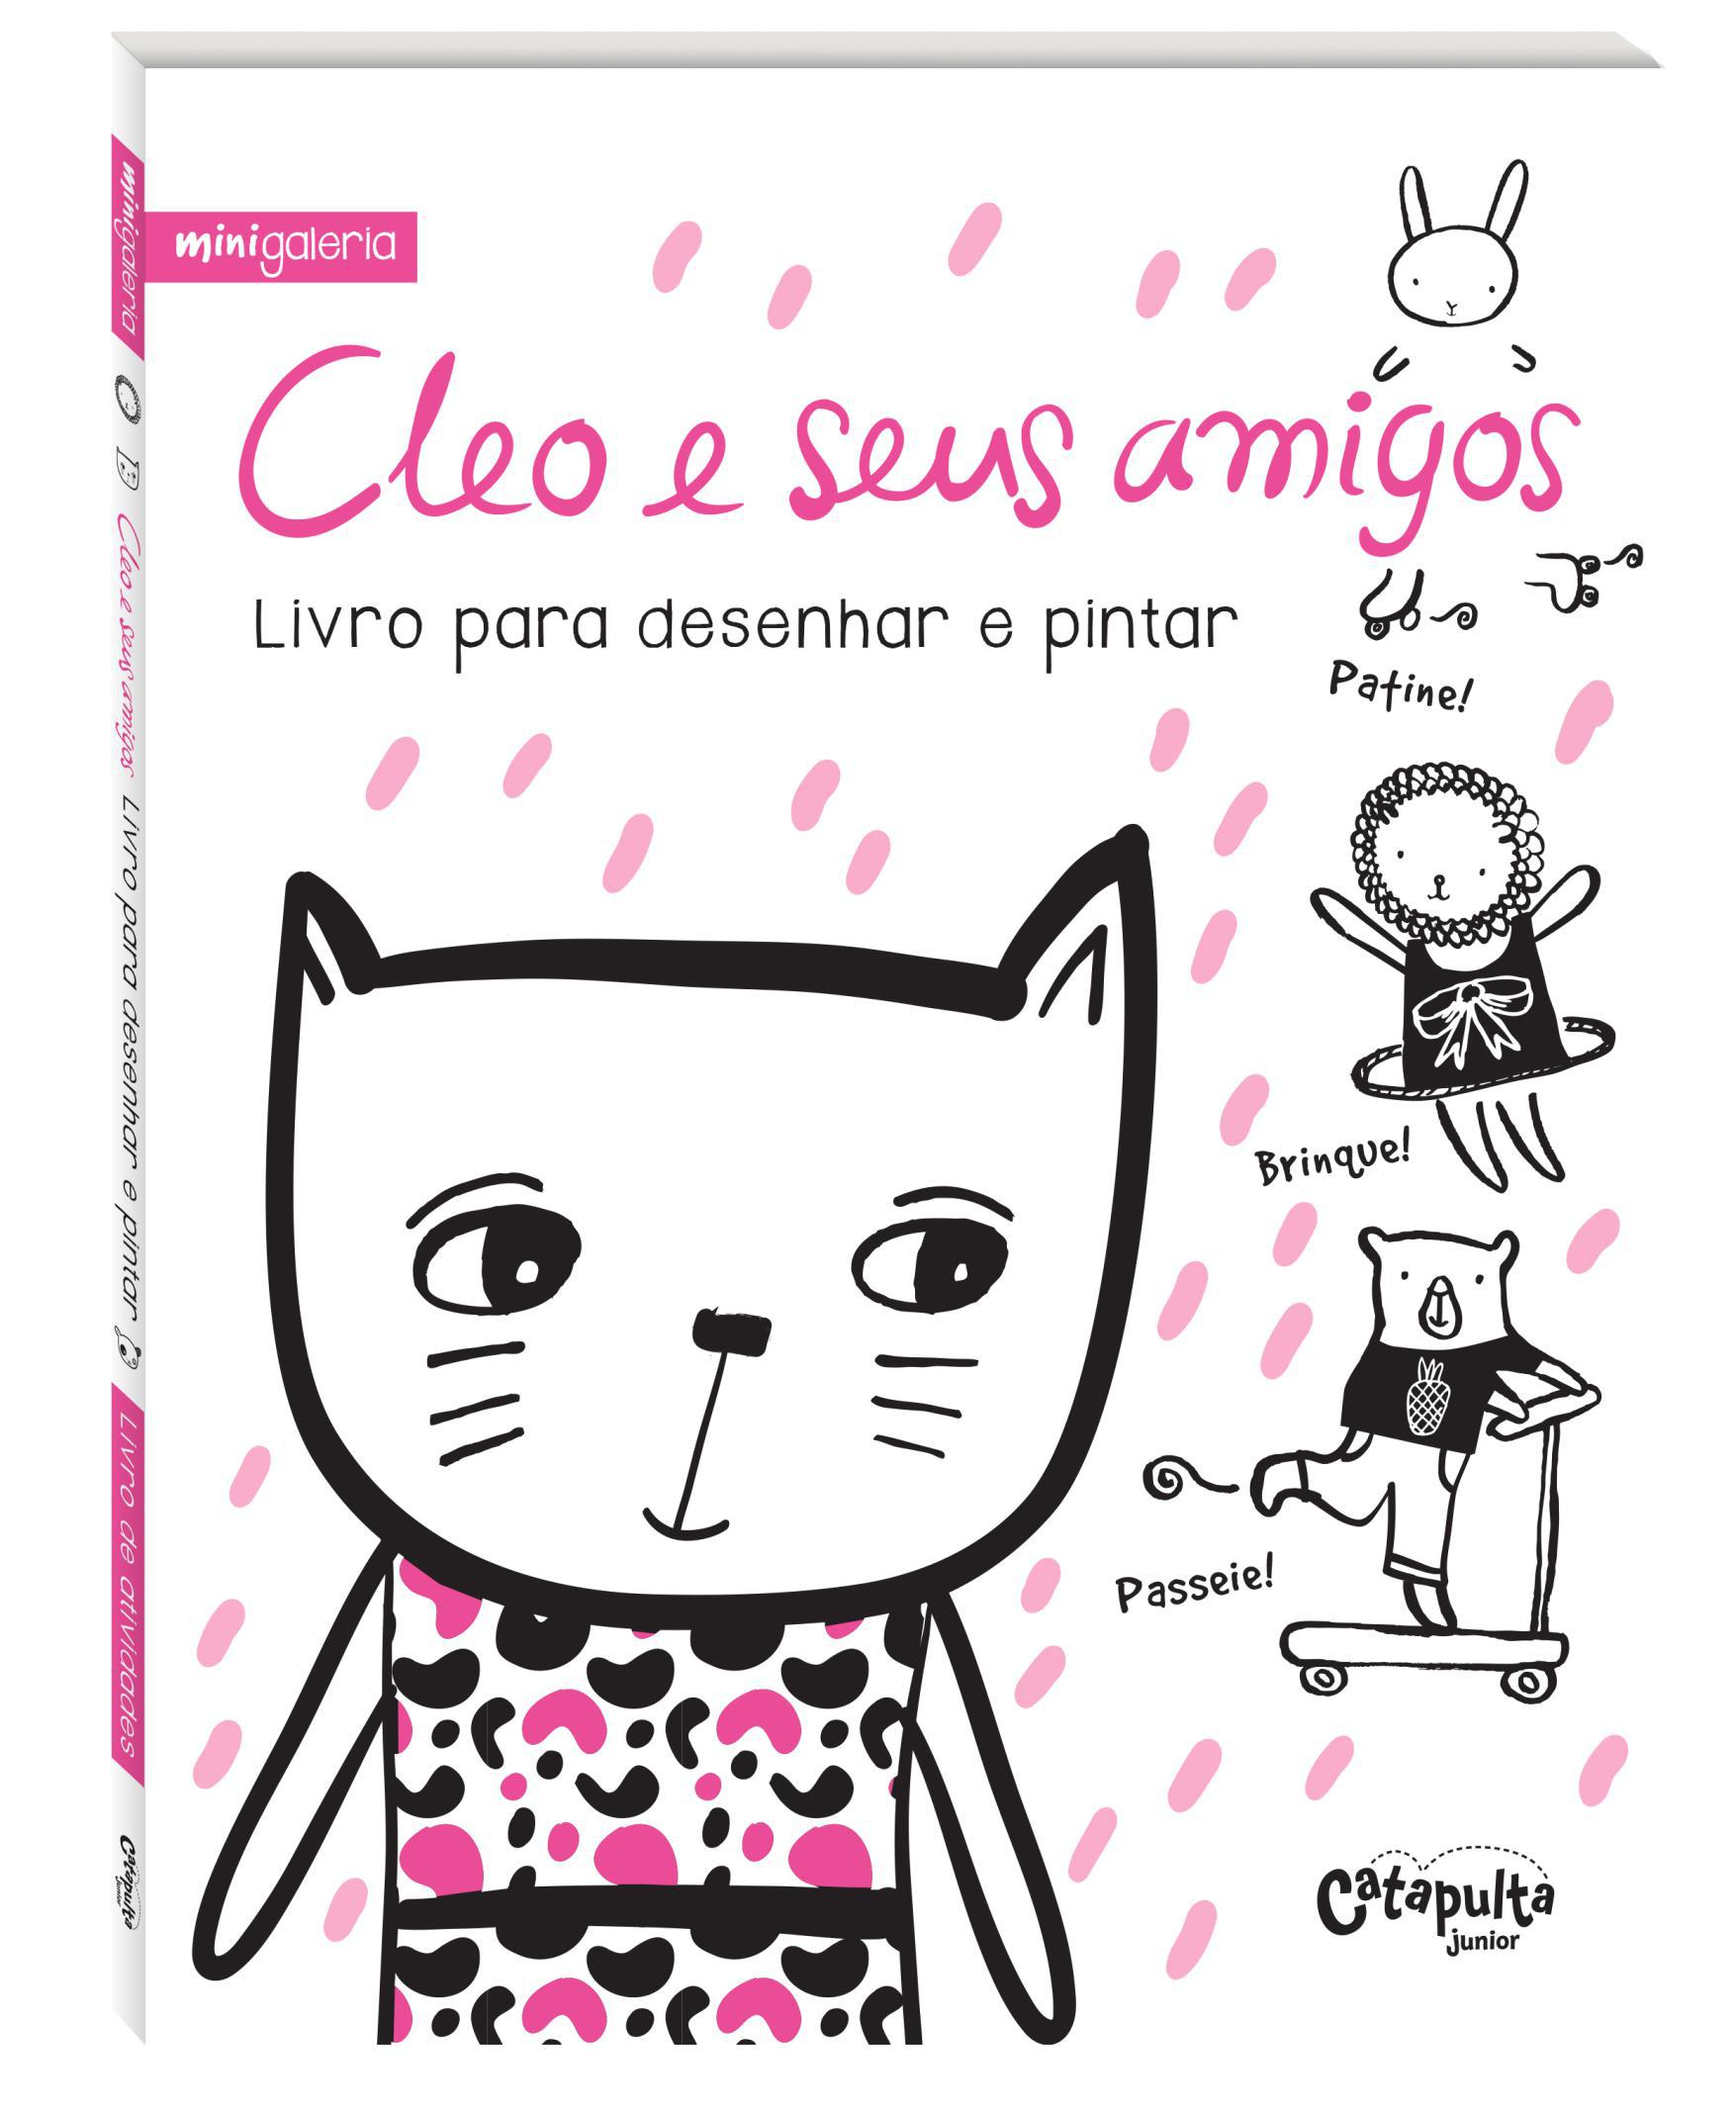 Cleo e seus amigos - RioMar Fortaleza Online